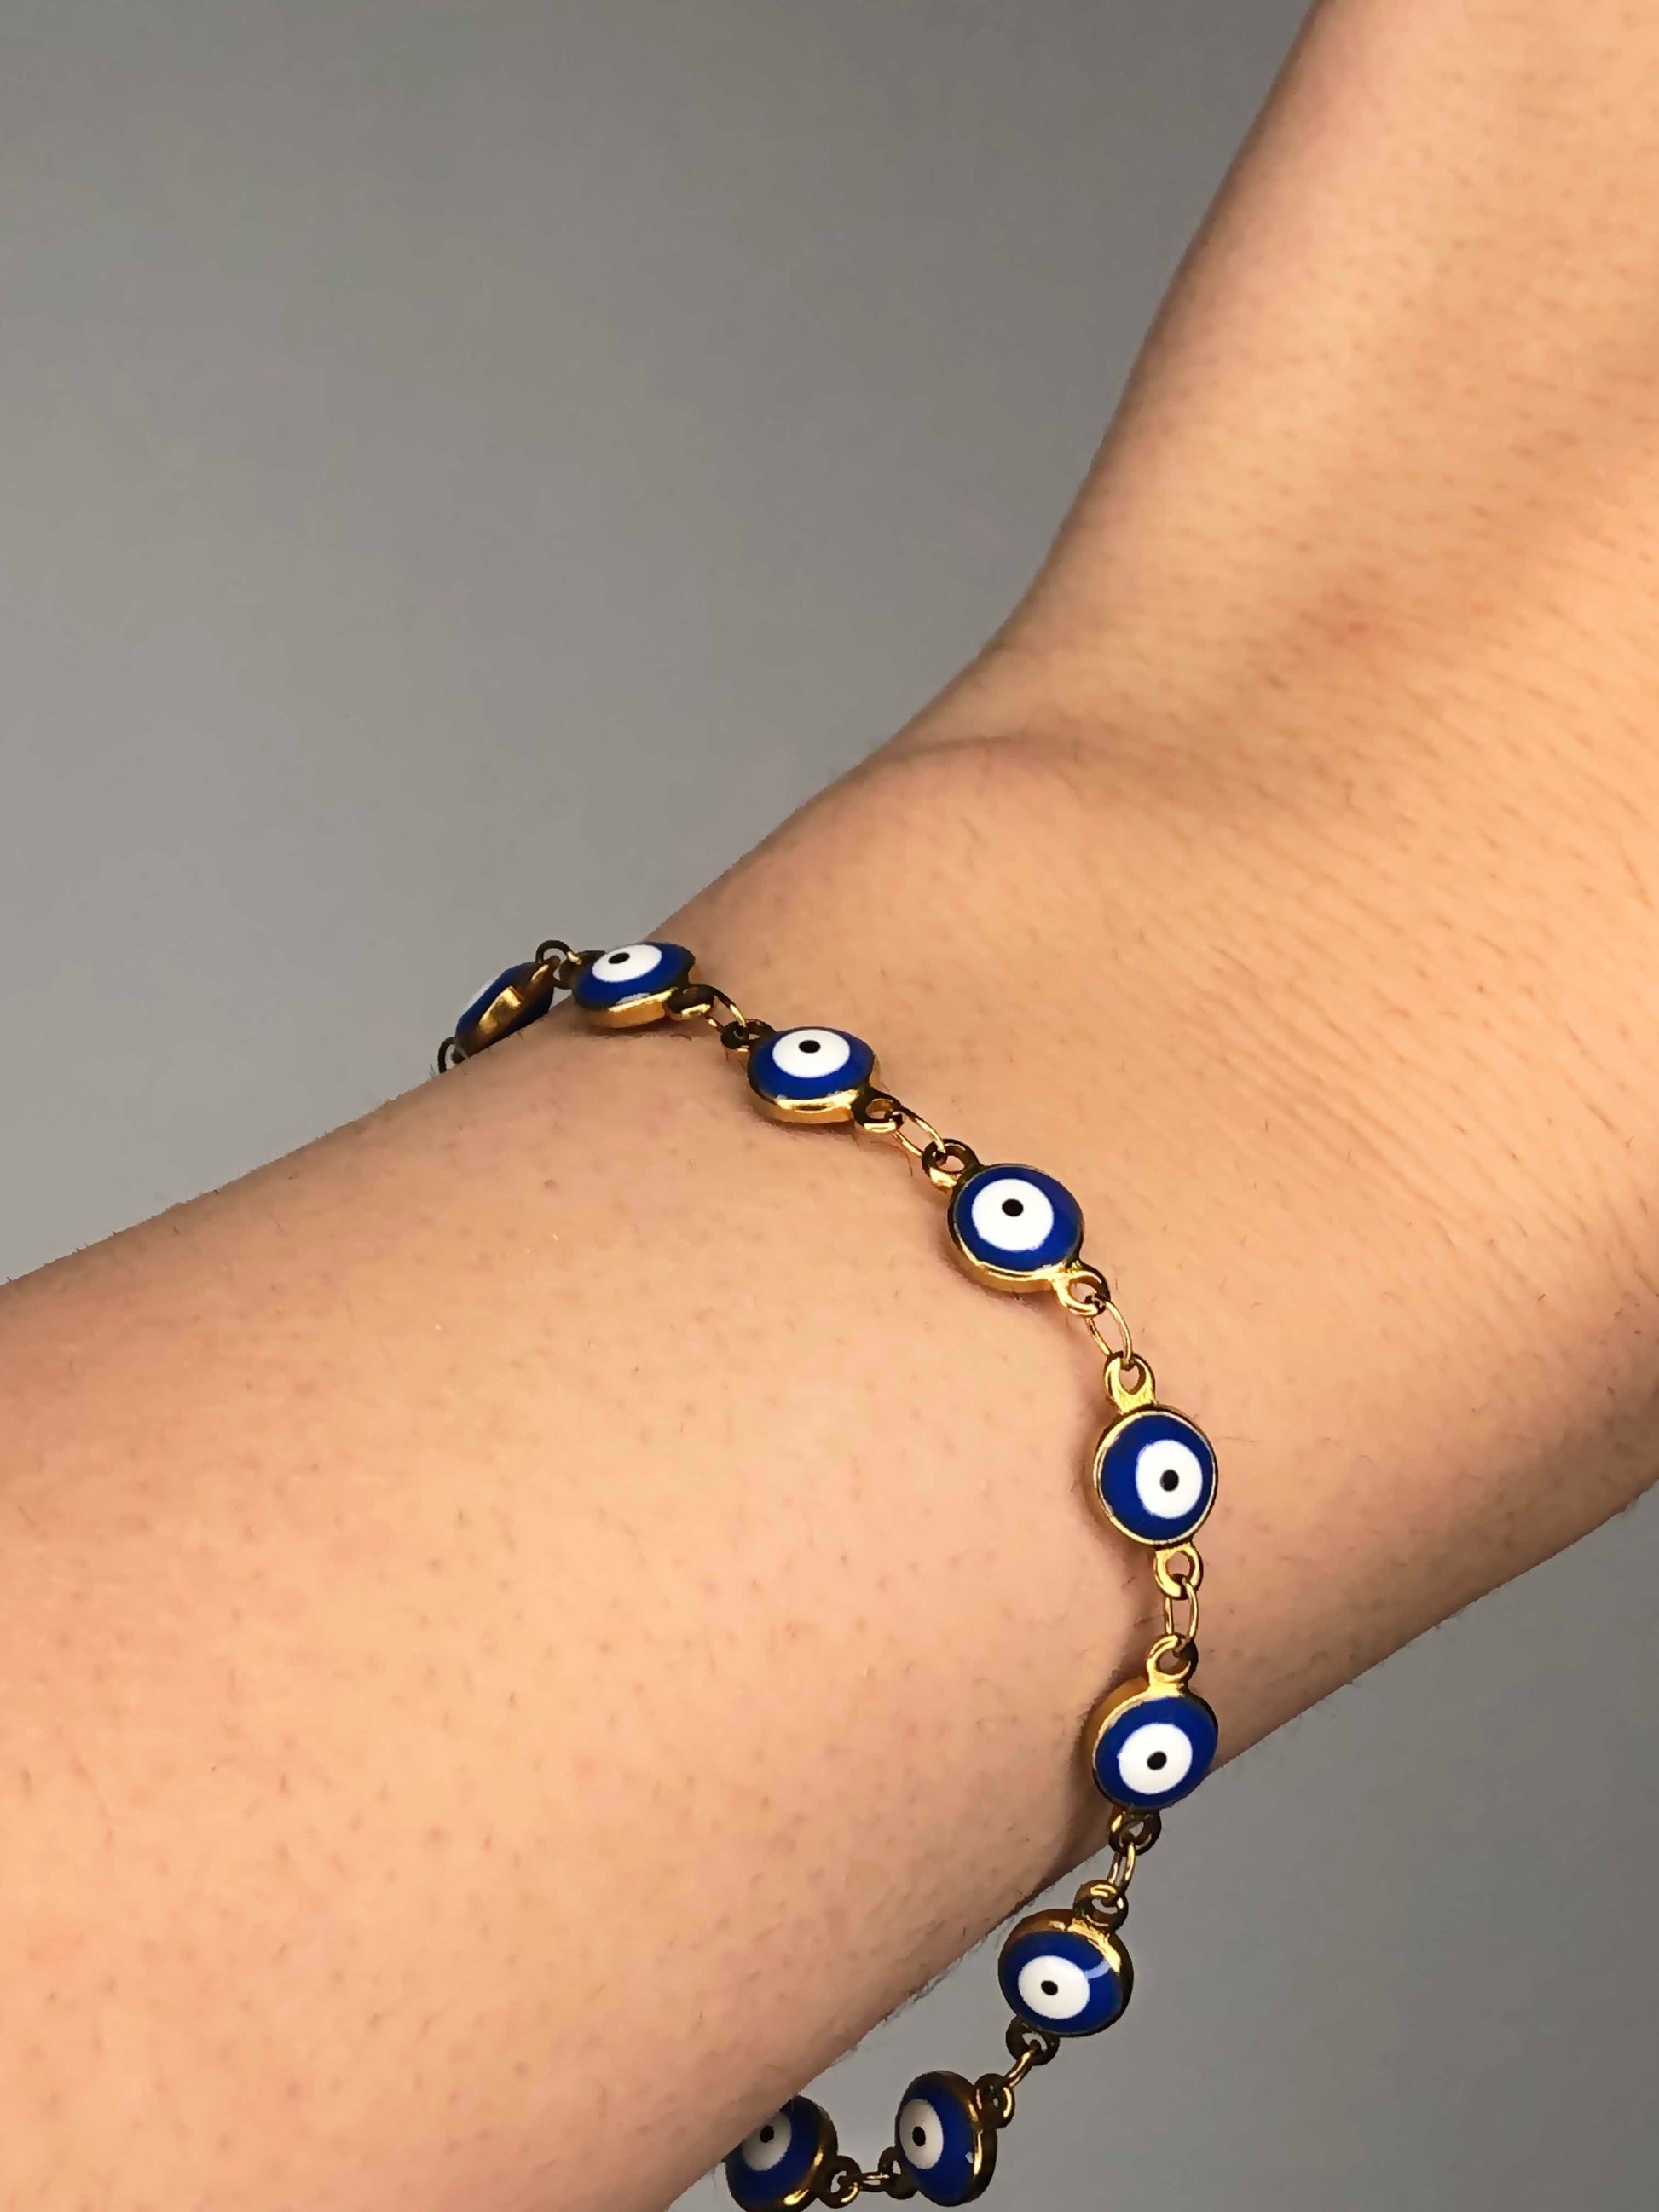 Handmade golden blue evil eye charm chain bracelet.